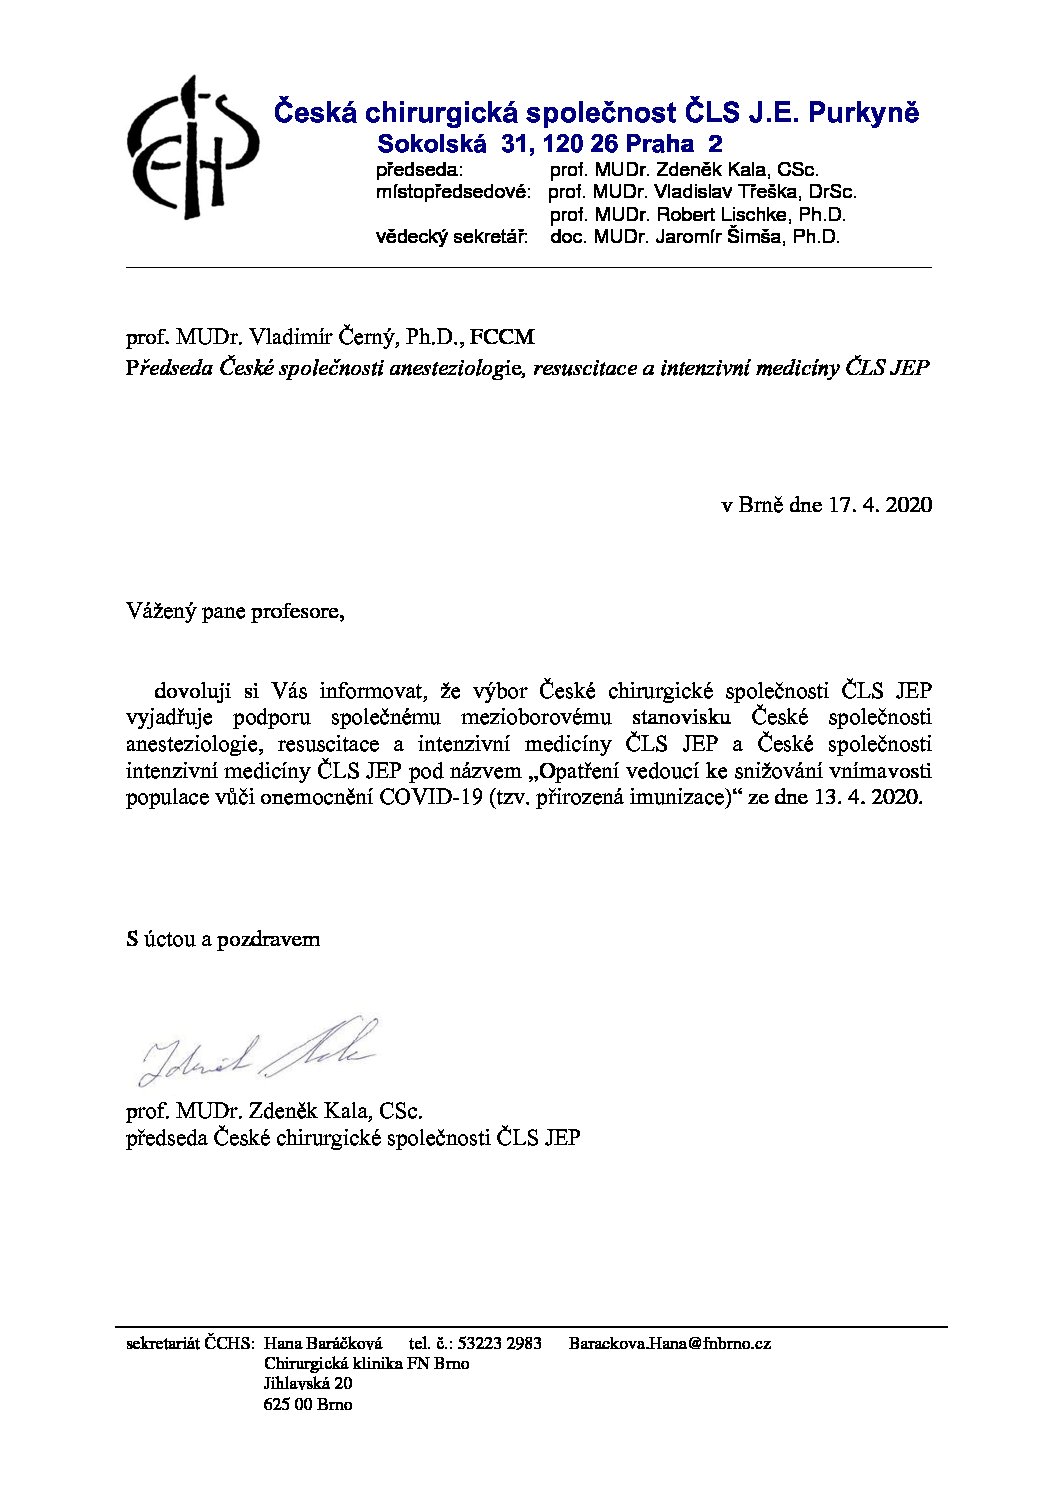 Stanovisko výboru ČCHS ČLS JEP k přirozené imunizaci populace v souvislosti s COVID-19 (17. 4. 2020)